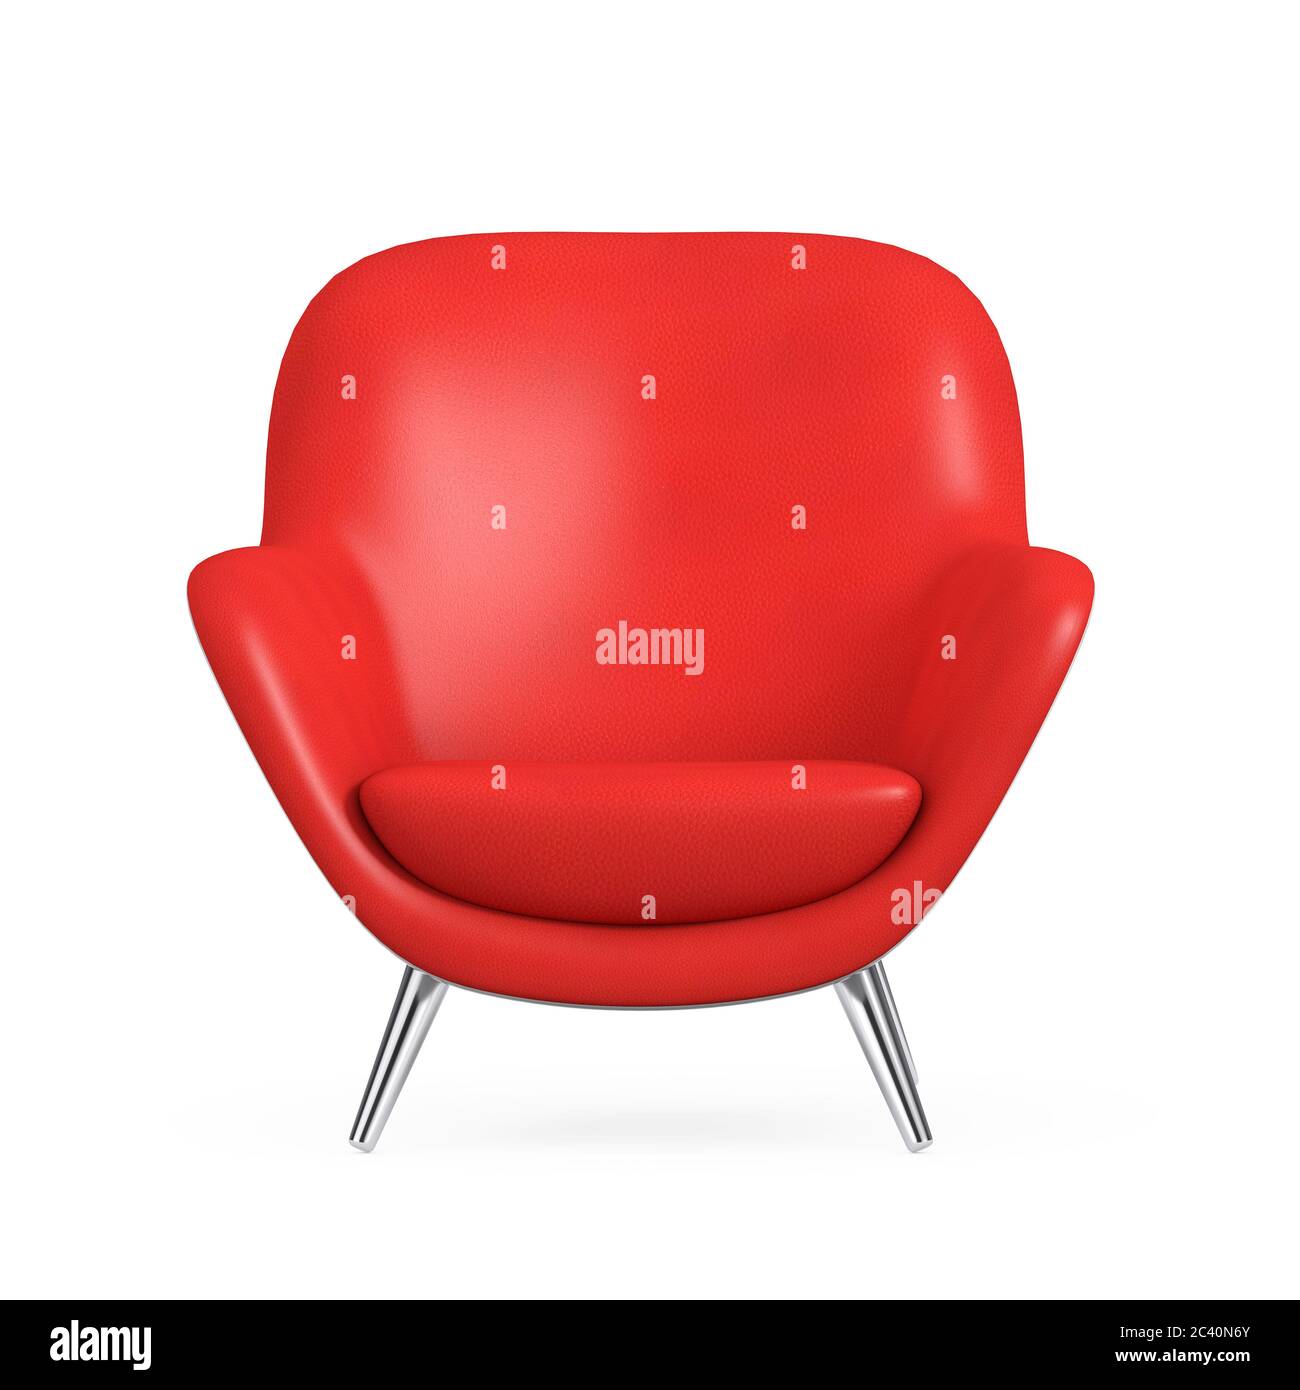 Chaise de détente en cuir rouge moderne de forme ovale sur fond blanc. Rendu 3d Banque D'Images